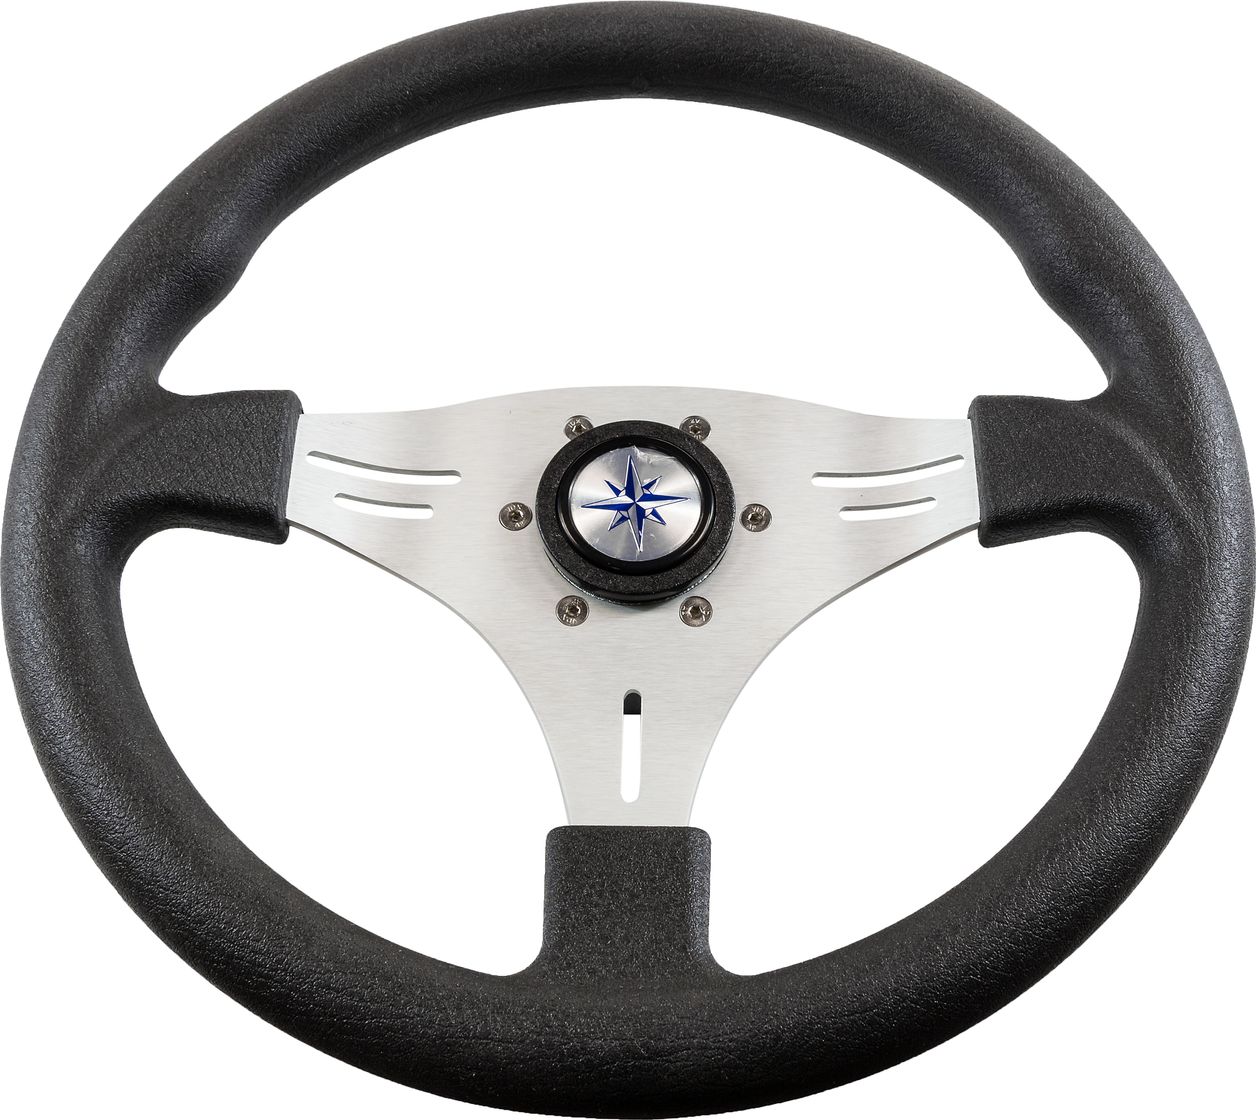 Рулевое колесо MANTA обод черный, спицы серебряные д. 355 мм VN70551-01 рулевое колесо leader wood деревянный обод серебряные спицы д 360 мм vn7360 33